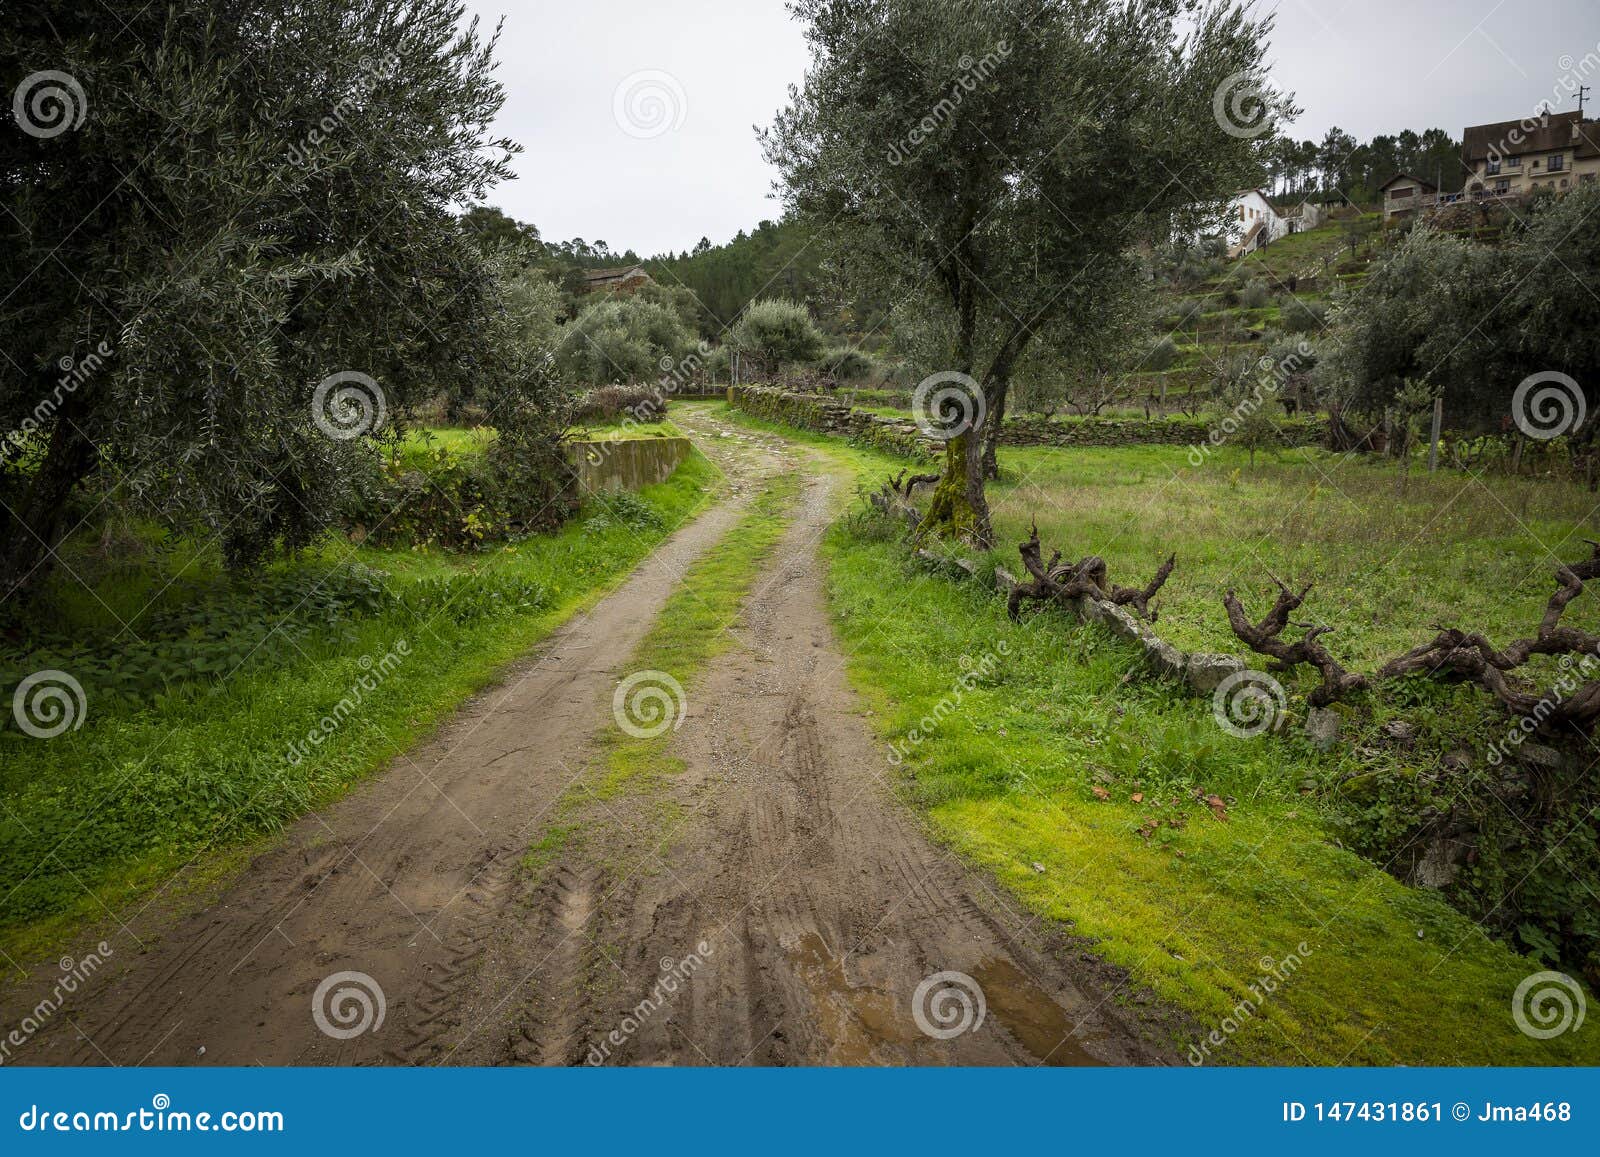 a rural path in barroca schist village